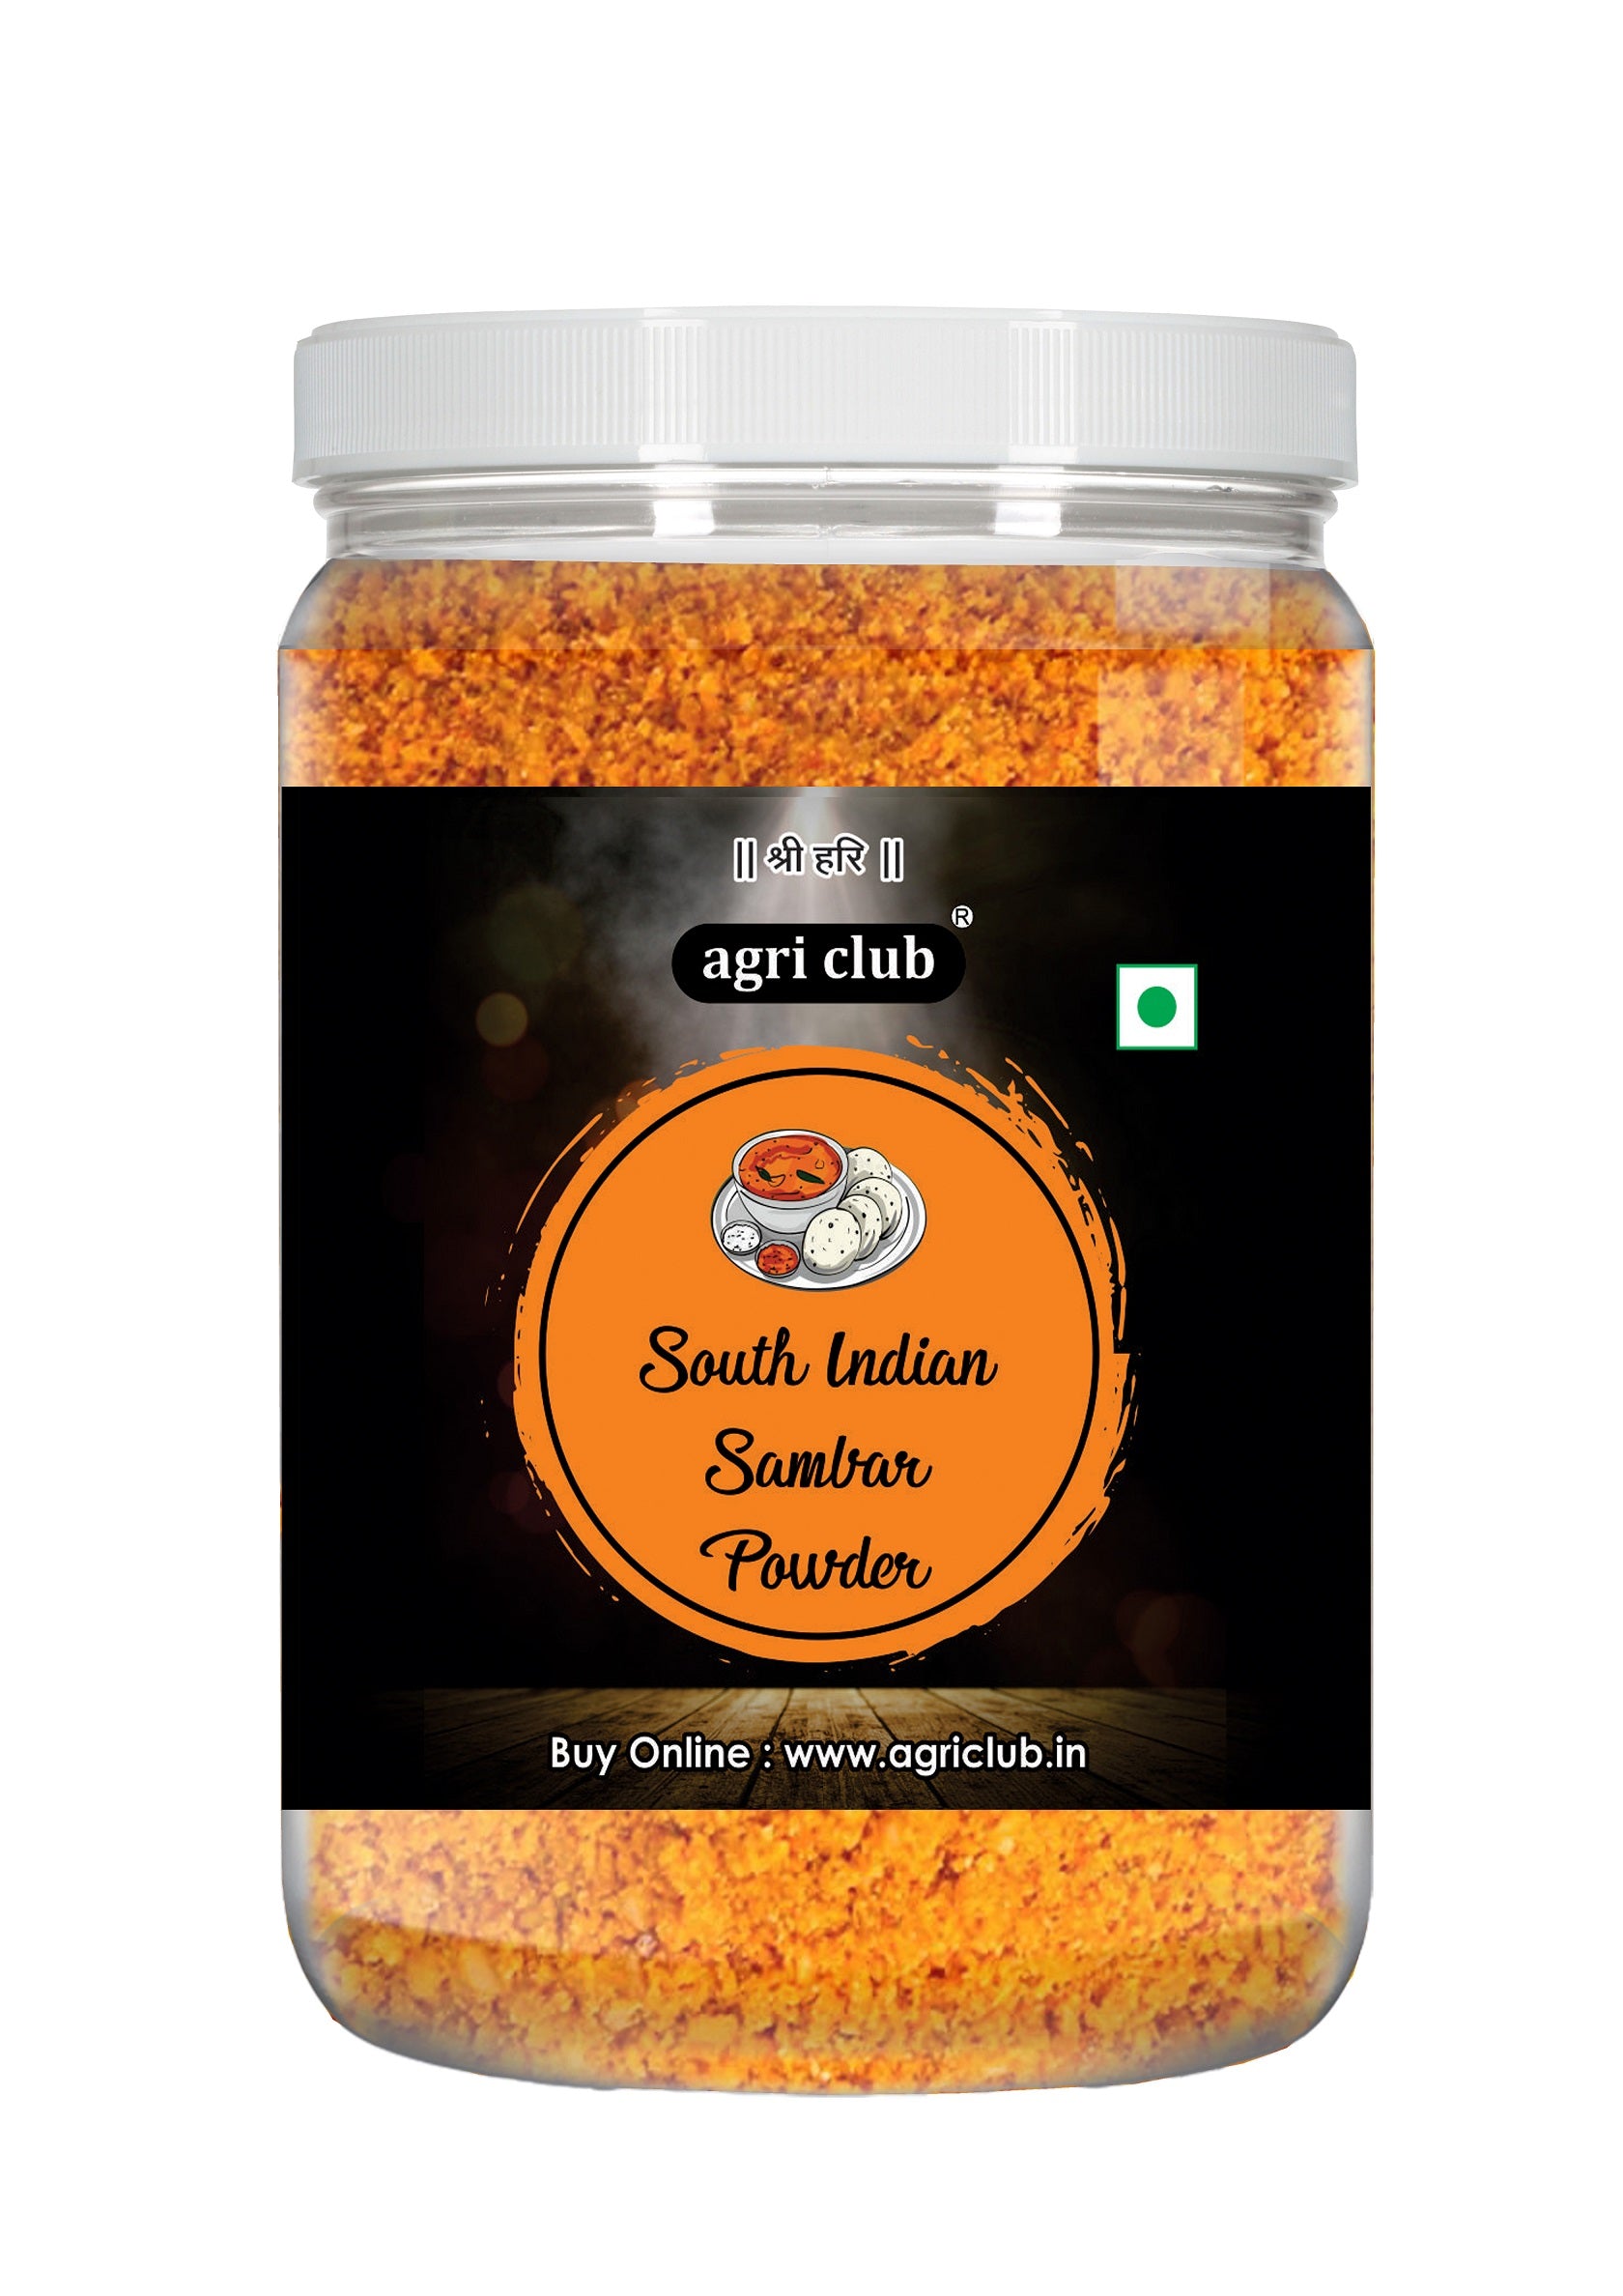 South Indian Sambar Powder 100% Natural 200 Gm